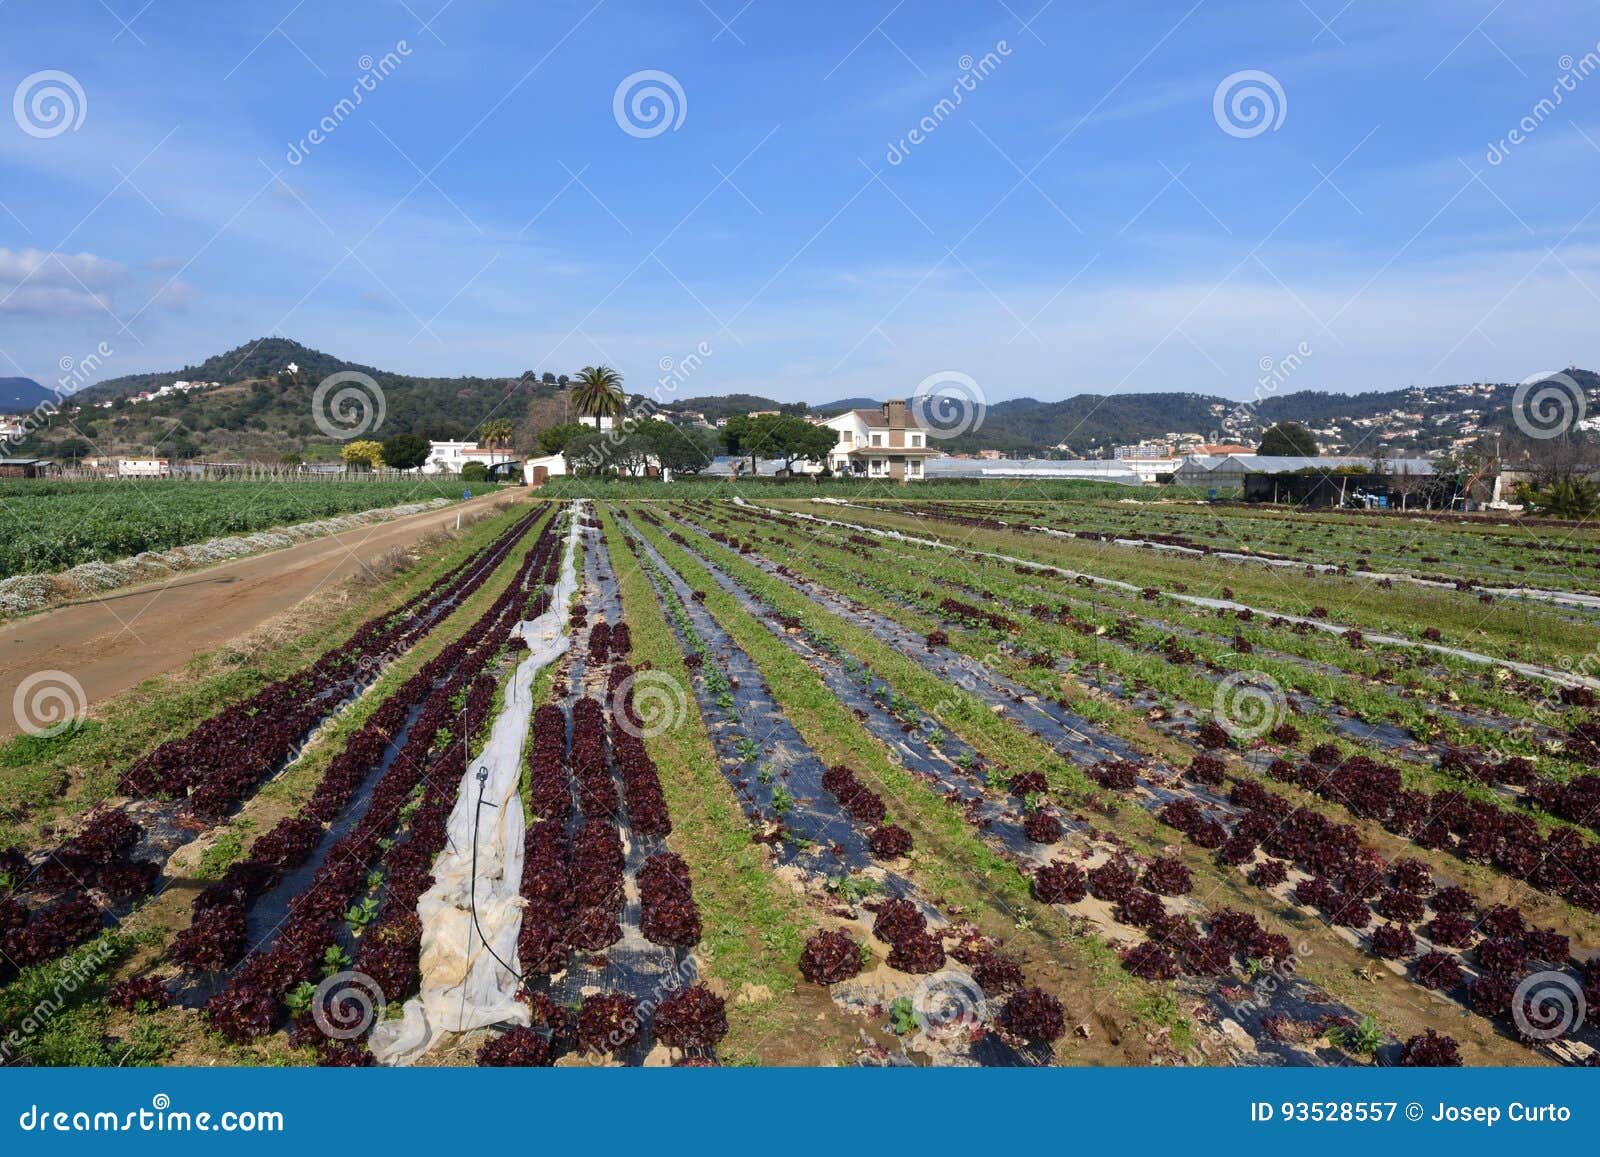 the typical vegetable garden of el maresme near malgrat de mar,